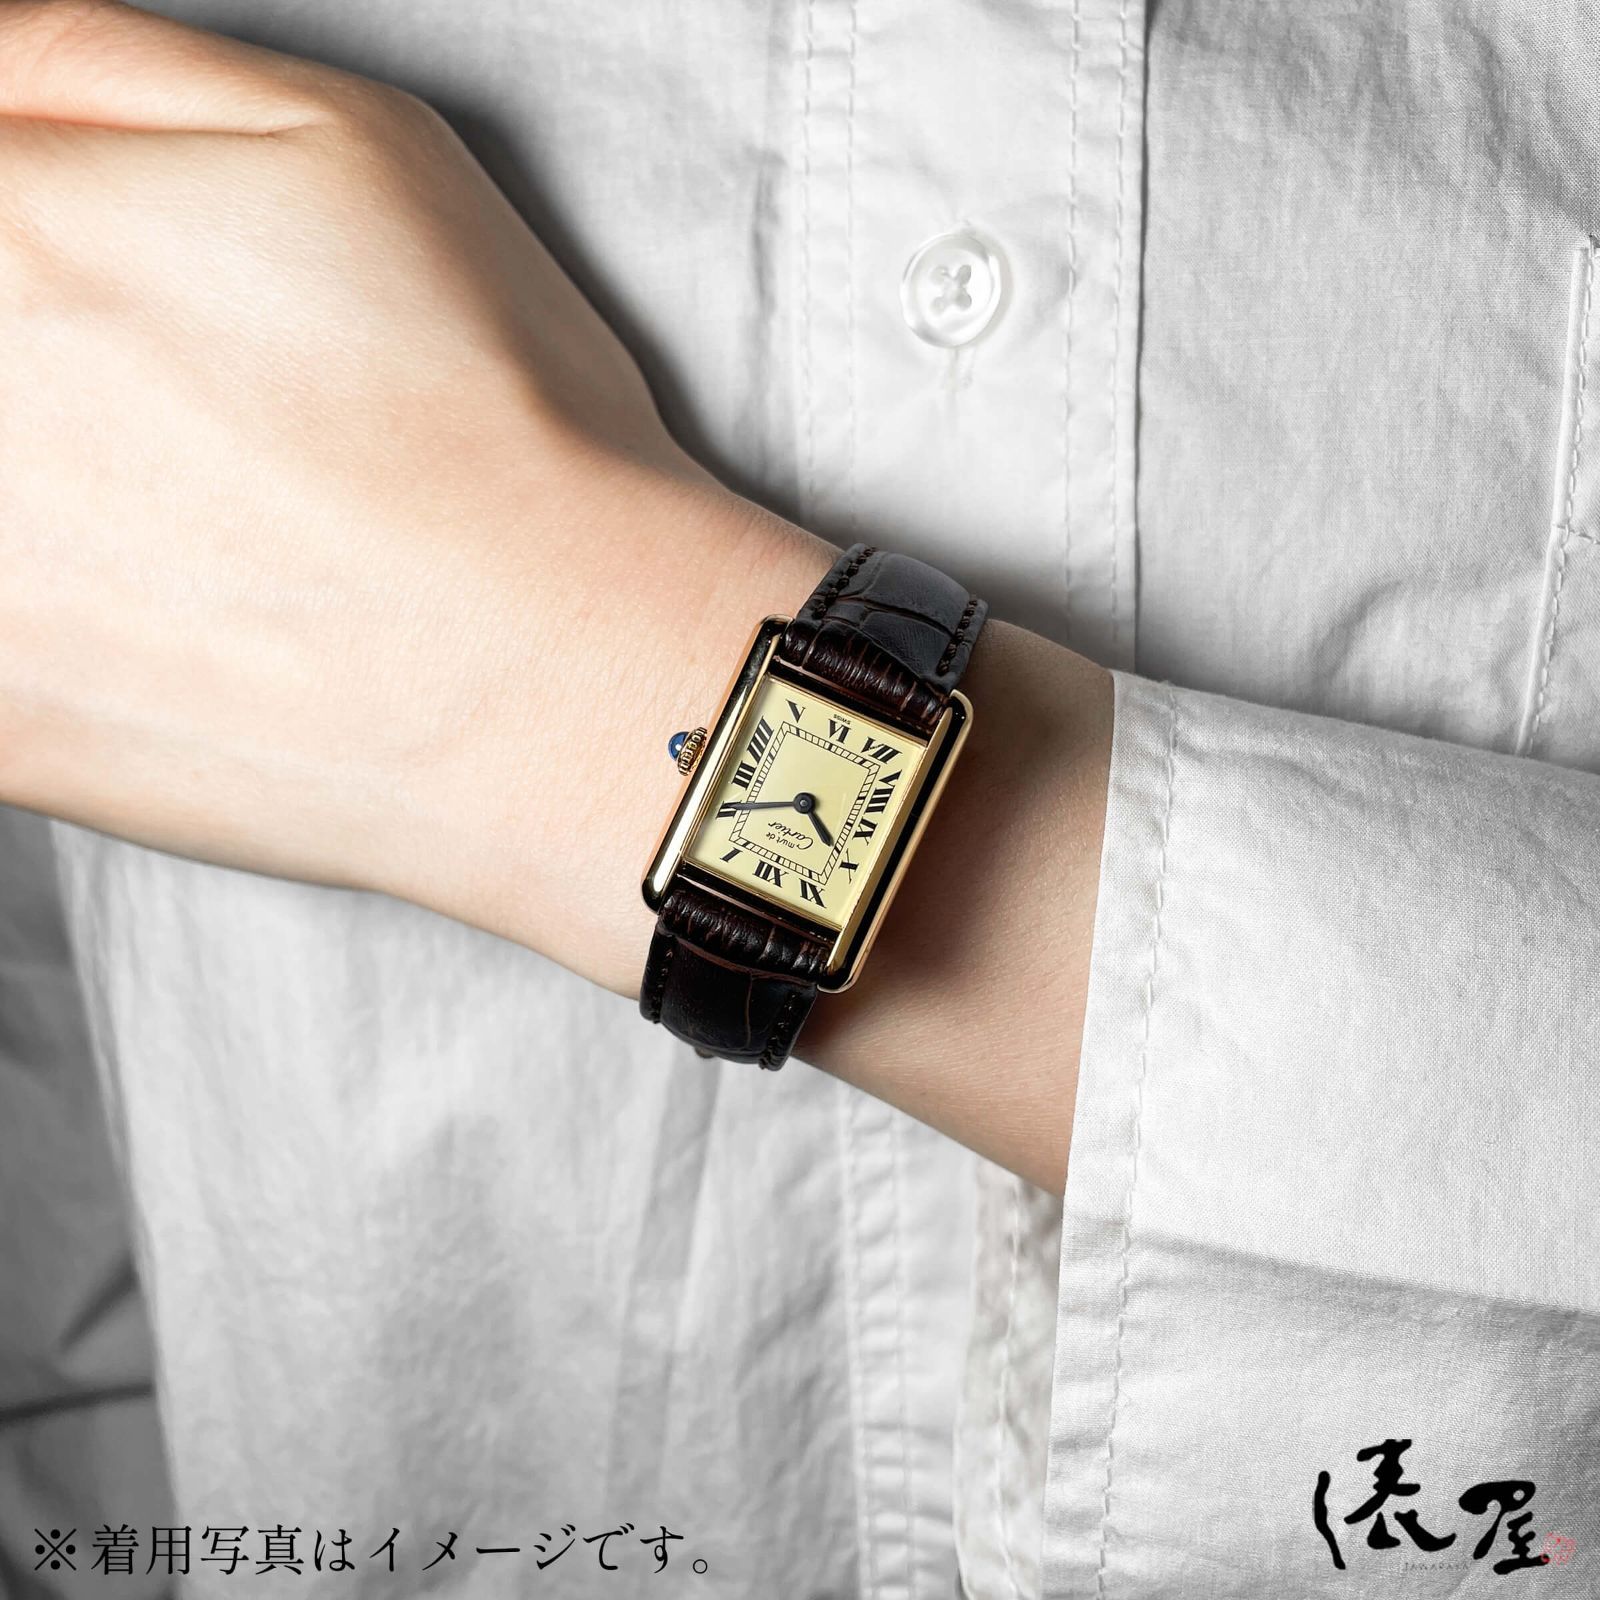 【OH済/仕上済】カルティエ マストタンク SM 手巻き式 極美品 レディース ヴィンテージ Cartier 時計 腕時計 中古【送料無料】